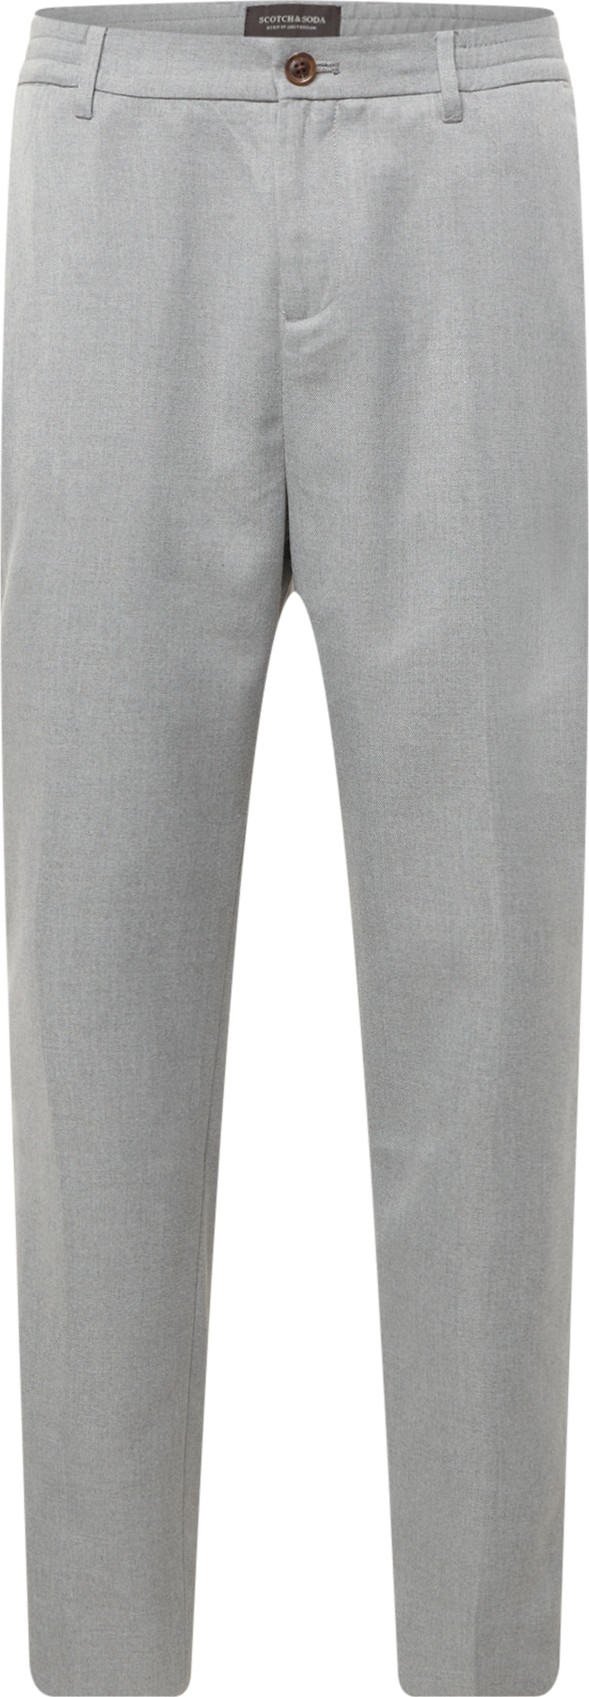 SCOTCH & SODA Chino kalhoty 'Fave' šedý melír